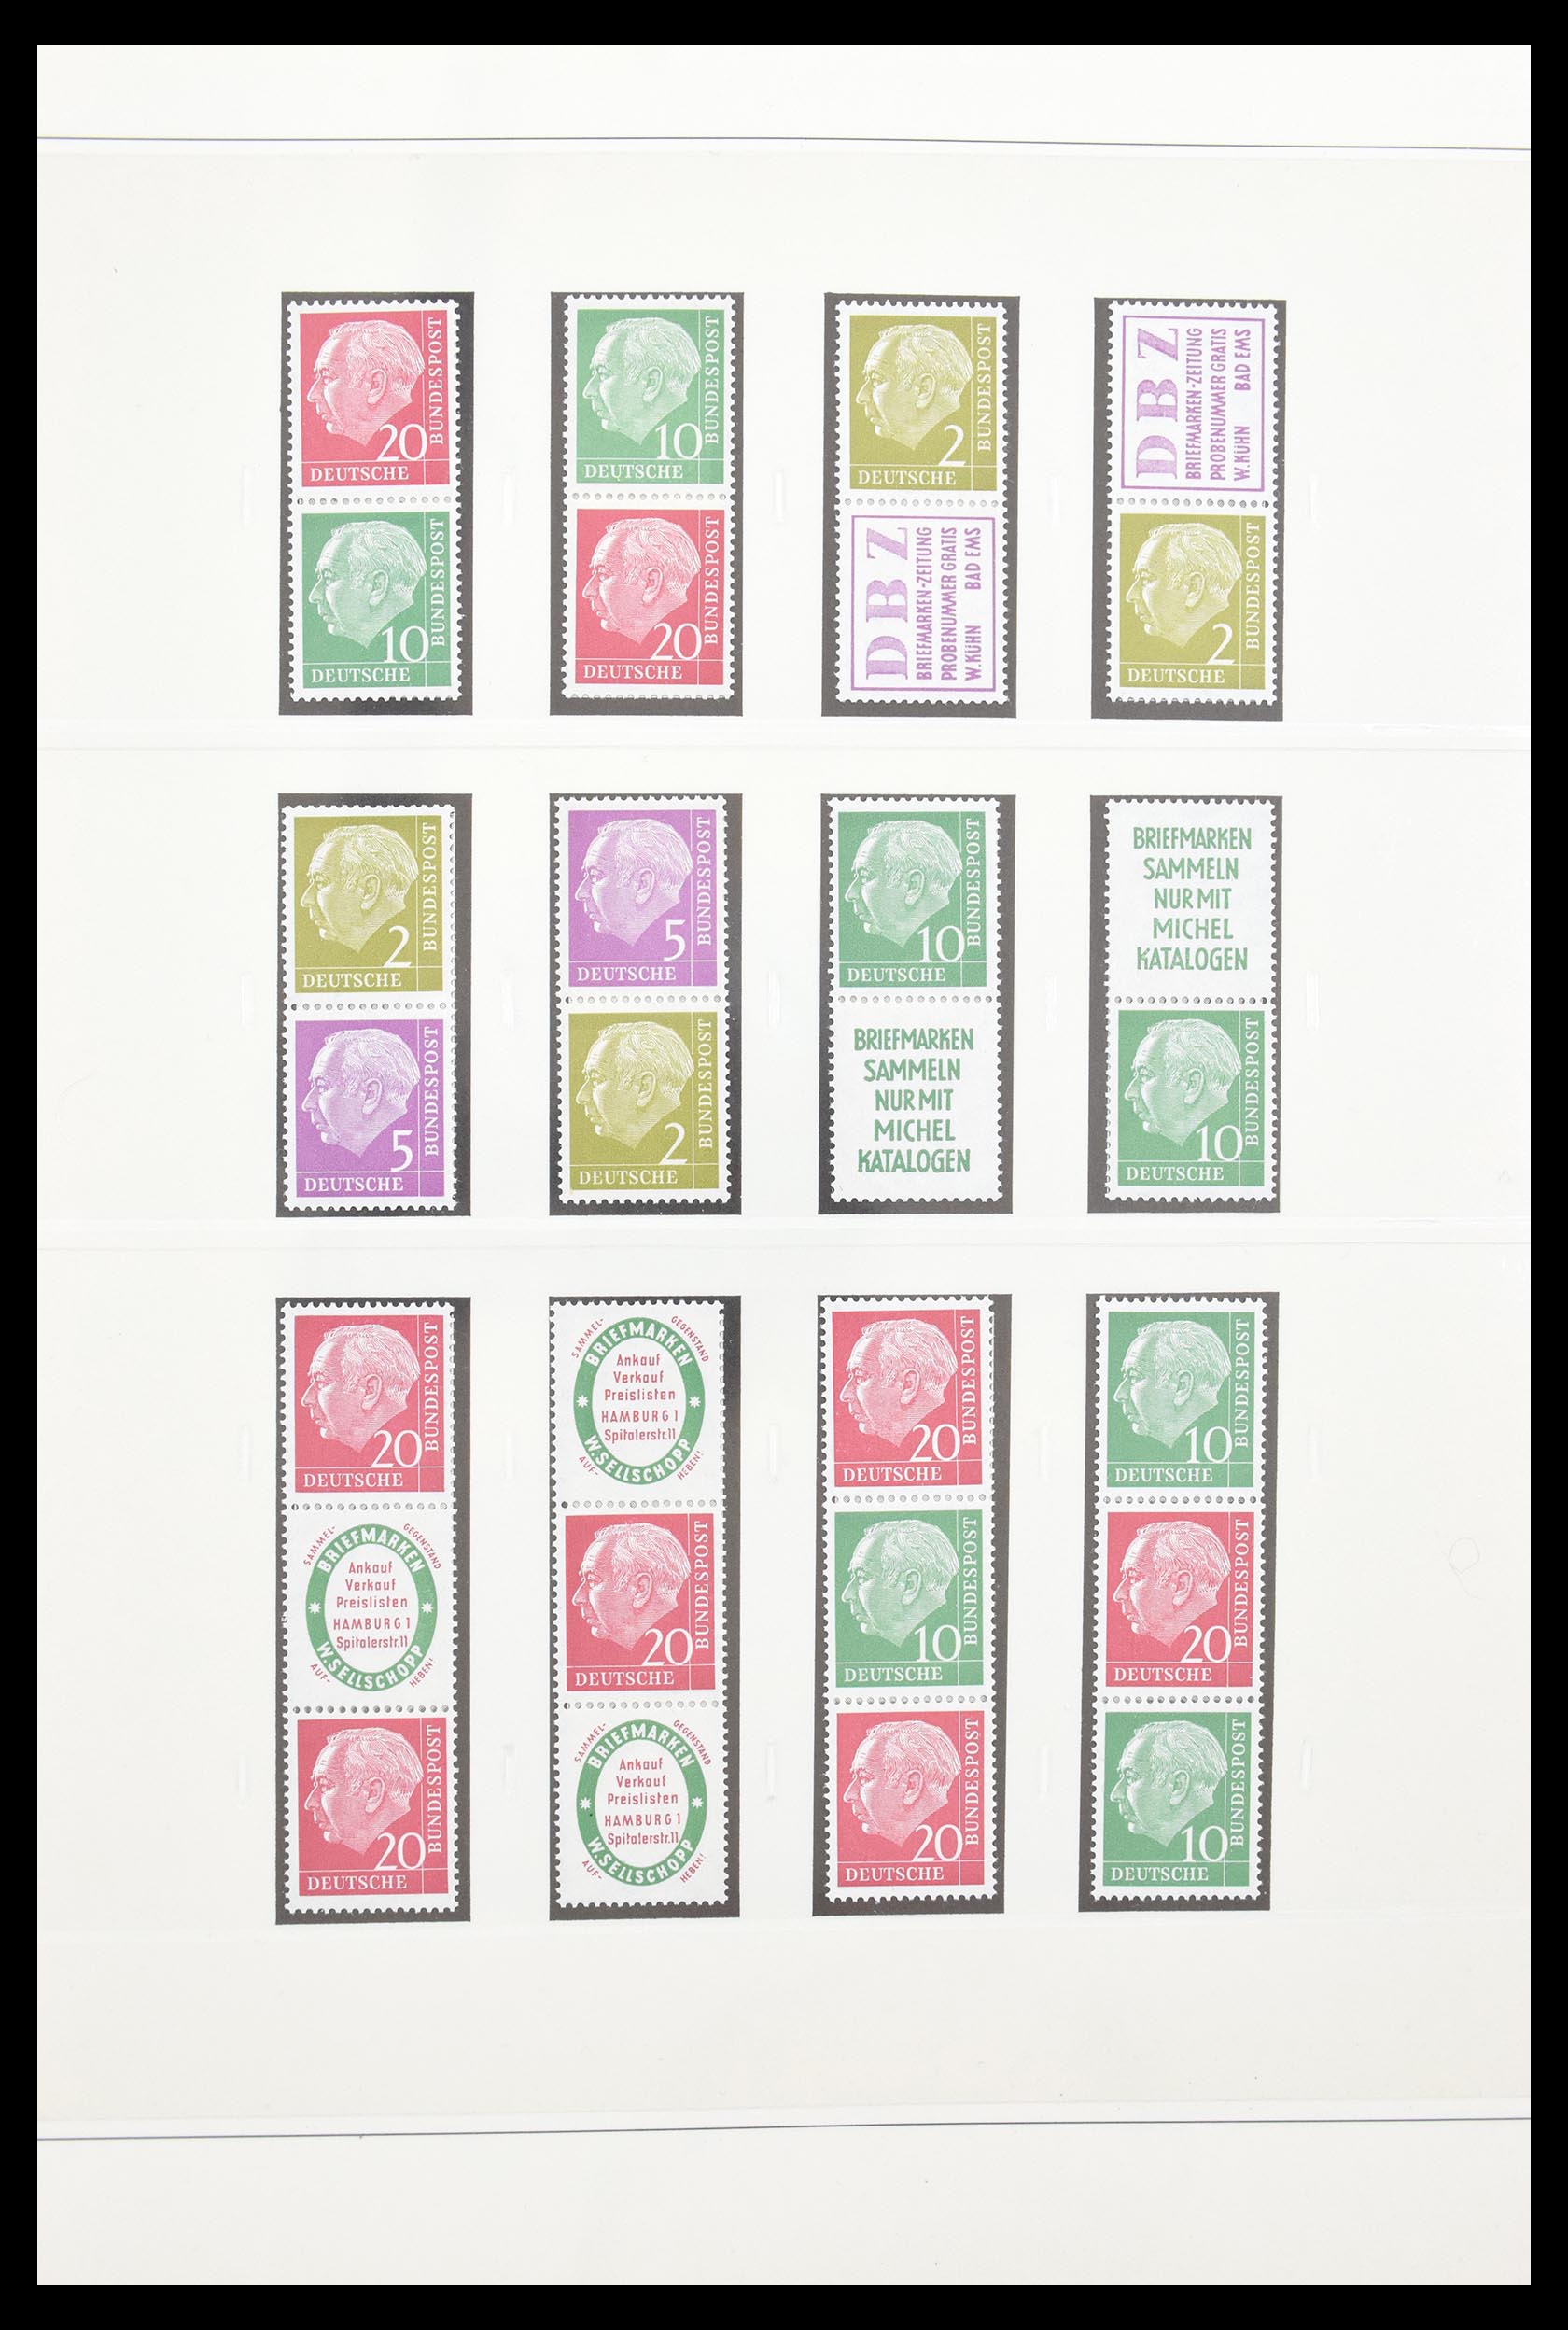 30605 005 - 30605 Bundespost combinaties 1951-1974.